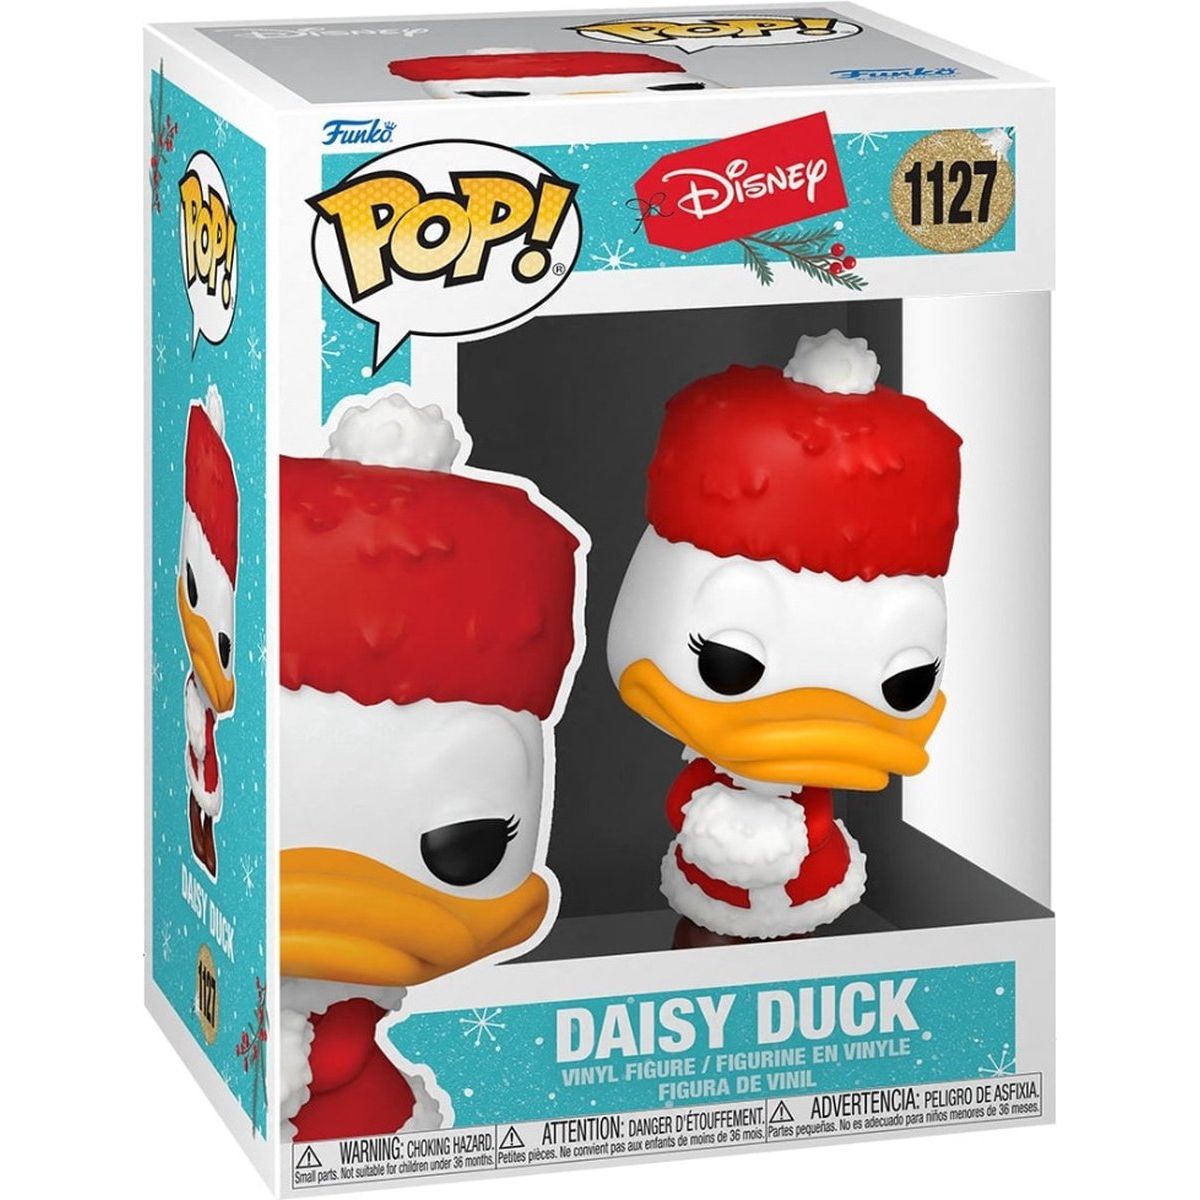 Disney - Daisy Duck Holiday - 1127